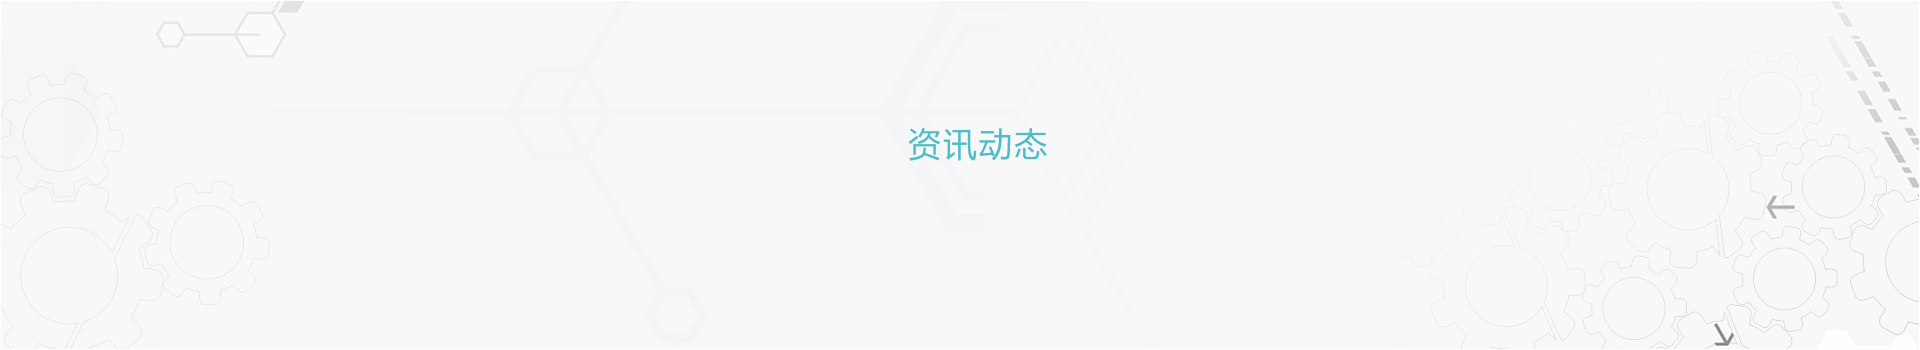 新益昌：中泰证券股份有限公司关于深圳新益昌科技股份有限公司首次公开发行